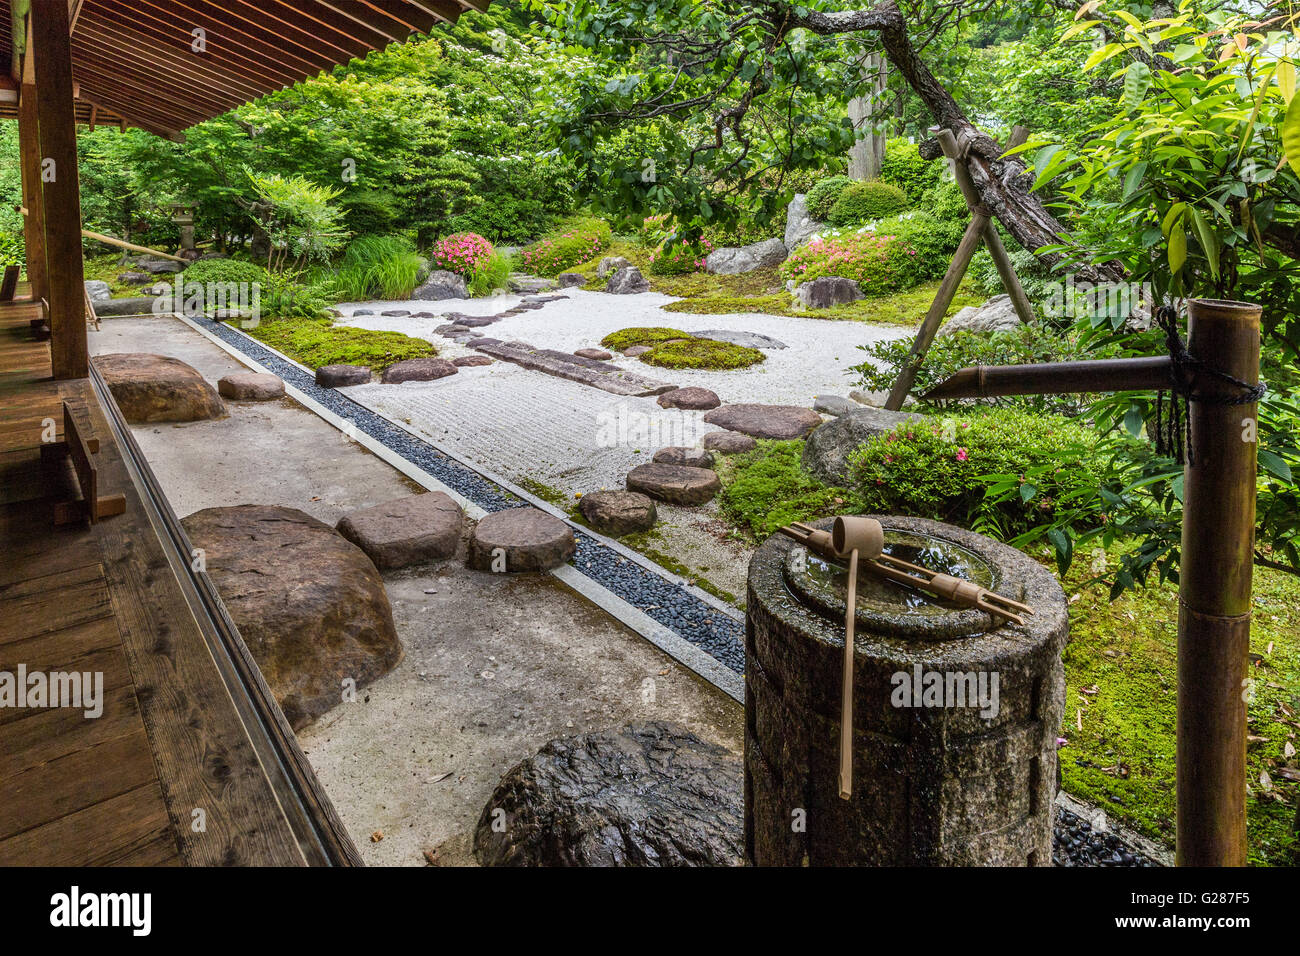 Jomyoji Tempel Kamakura hat einen restaurierten Teehaus Kisen-ein Besucher den Blick auf den Zen-Garten Karesansui genießen Stockfoto